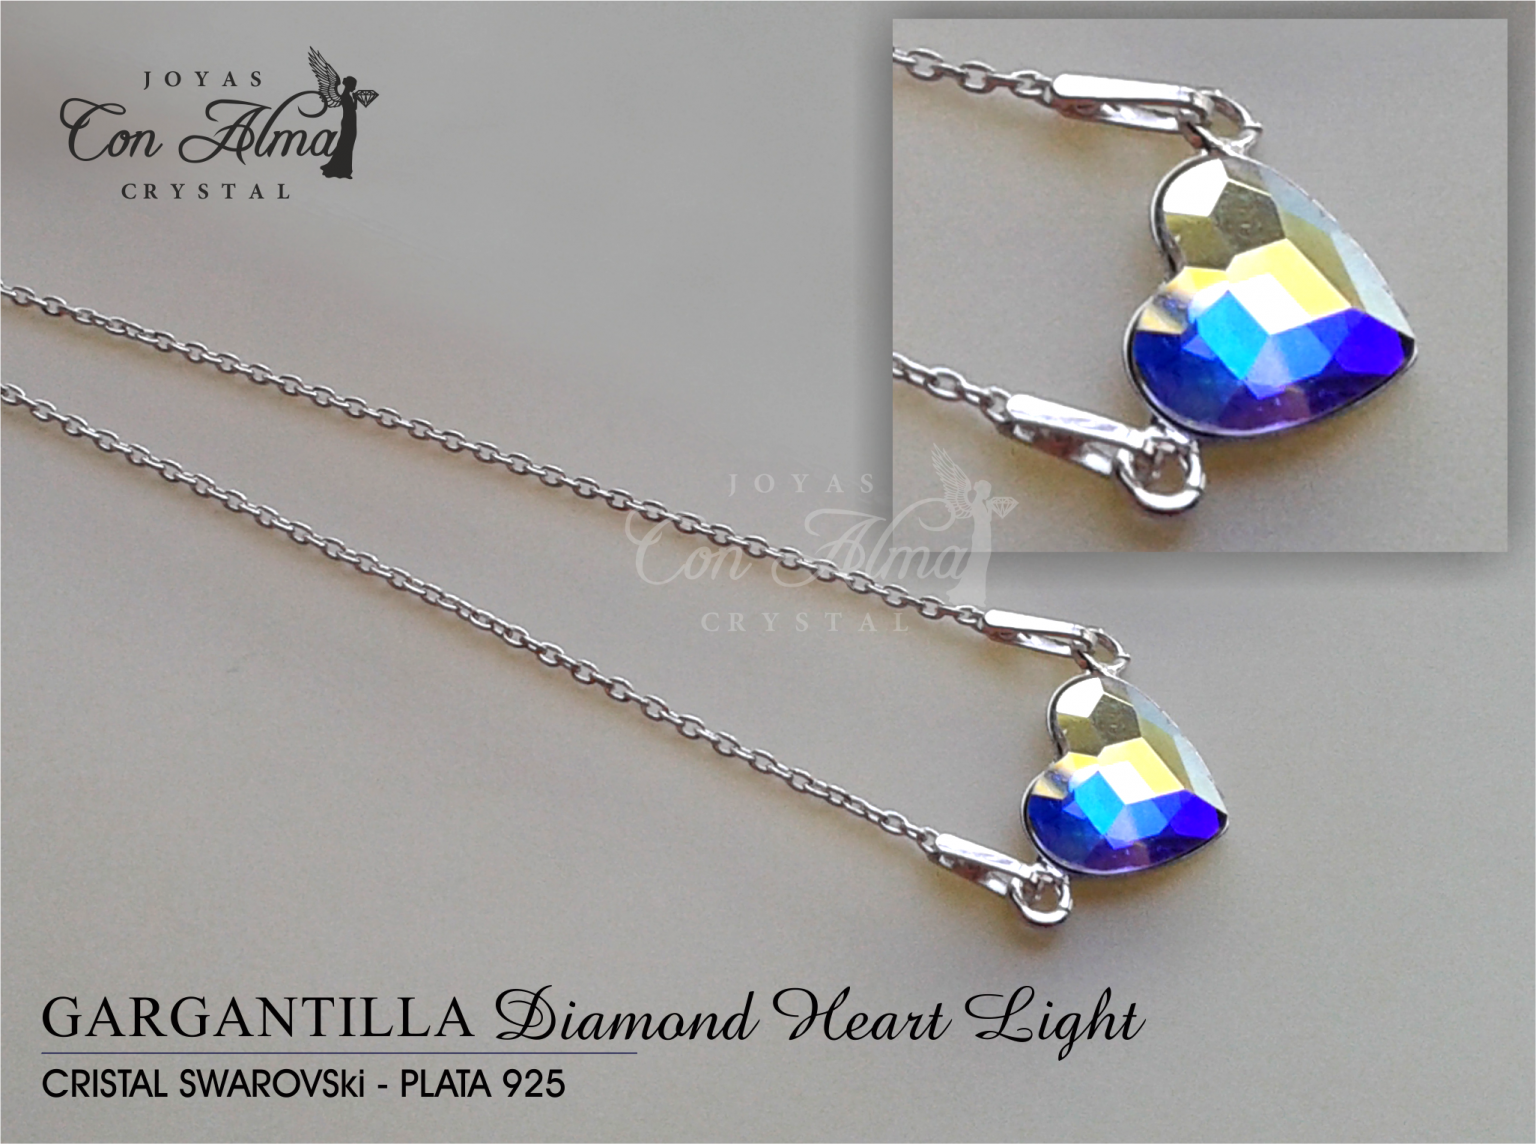 Gargantilla Diamond light 34,99 €